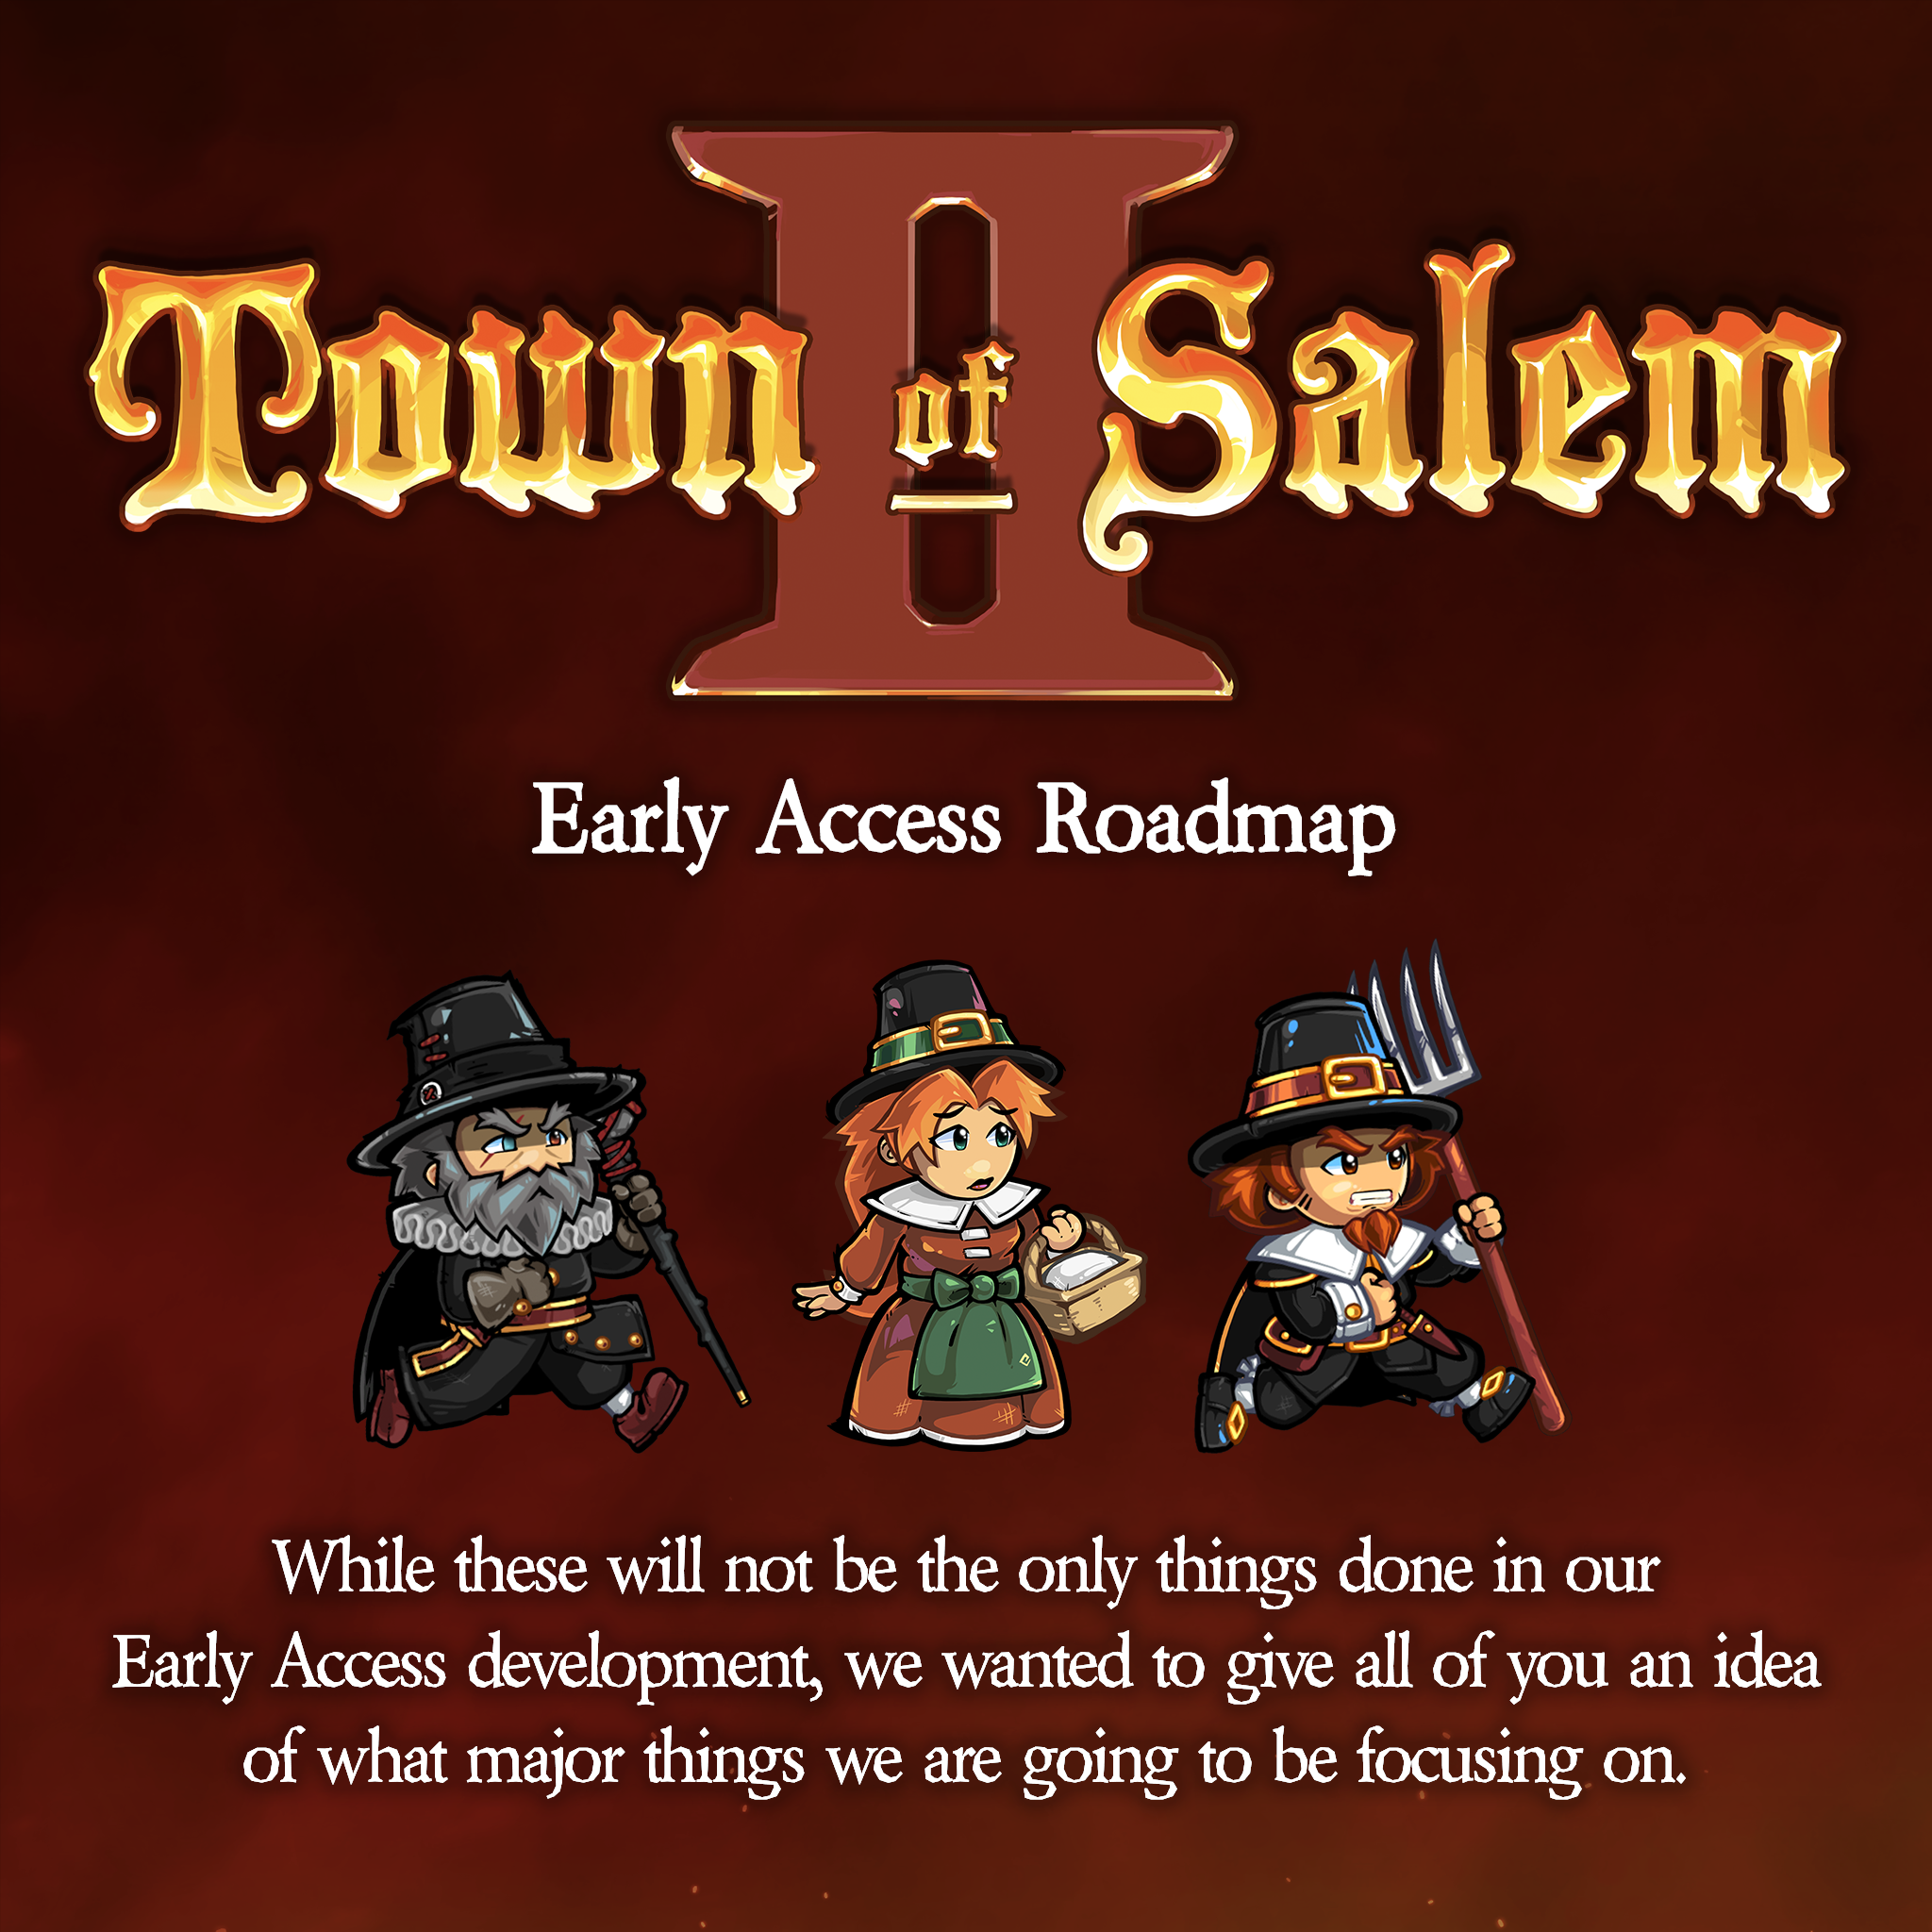 Buy Town of Salem 2 Steam